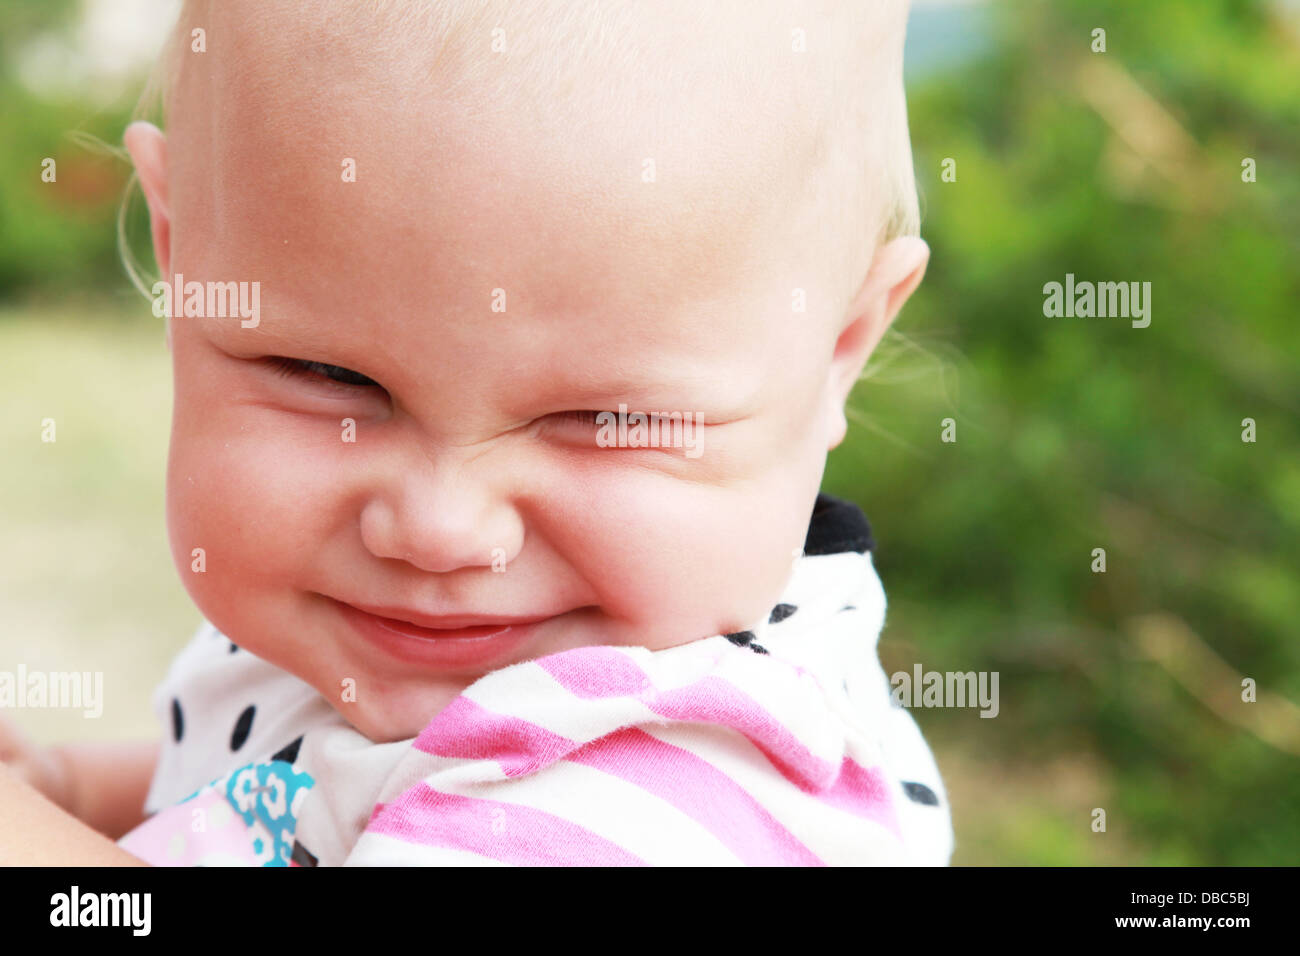 Lustig lächelndes Baby Mädchen outdoor Sommer close-up portrait Stockfoto